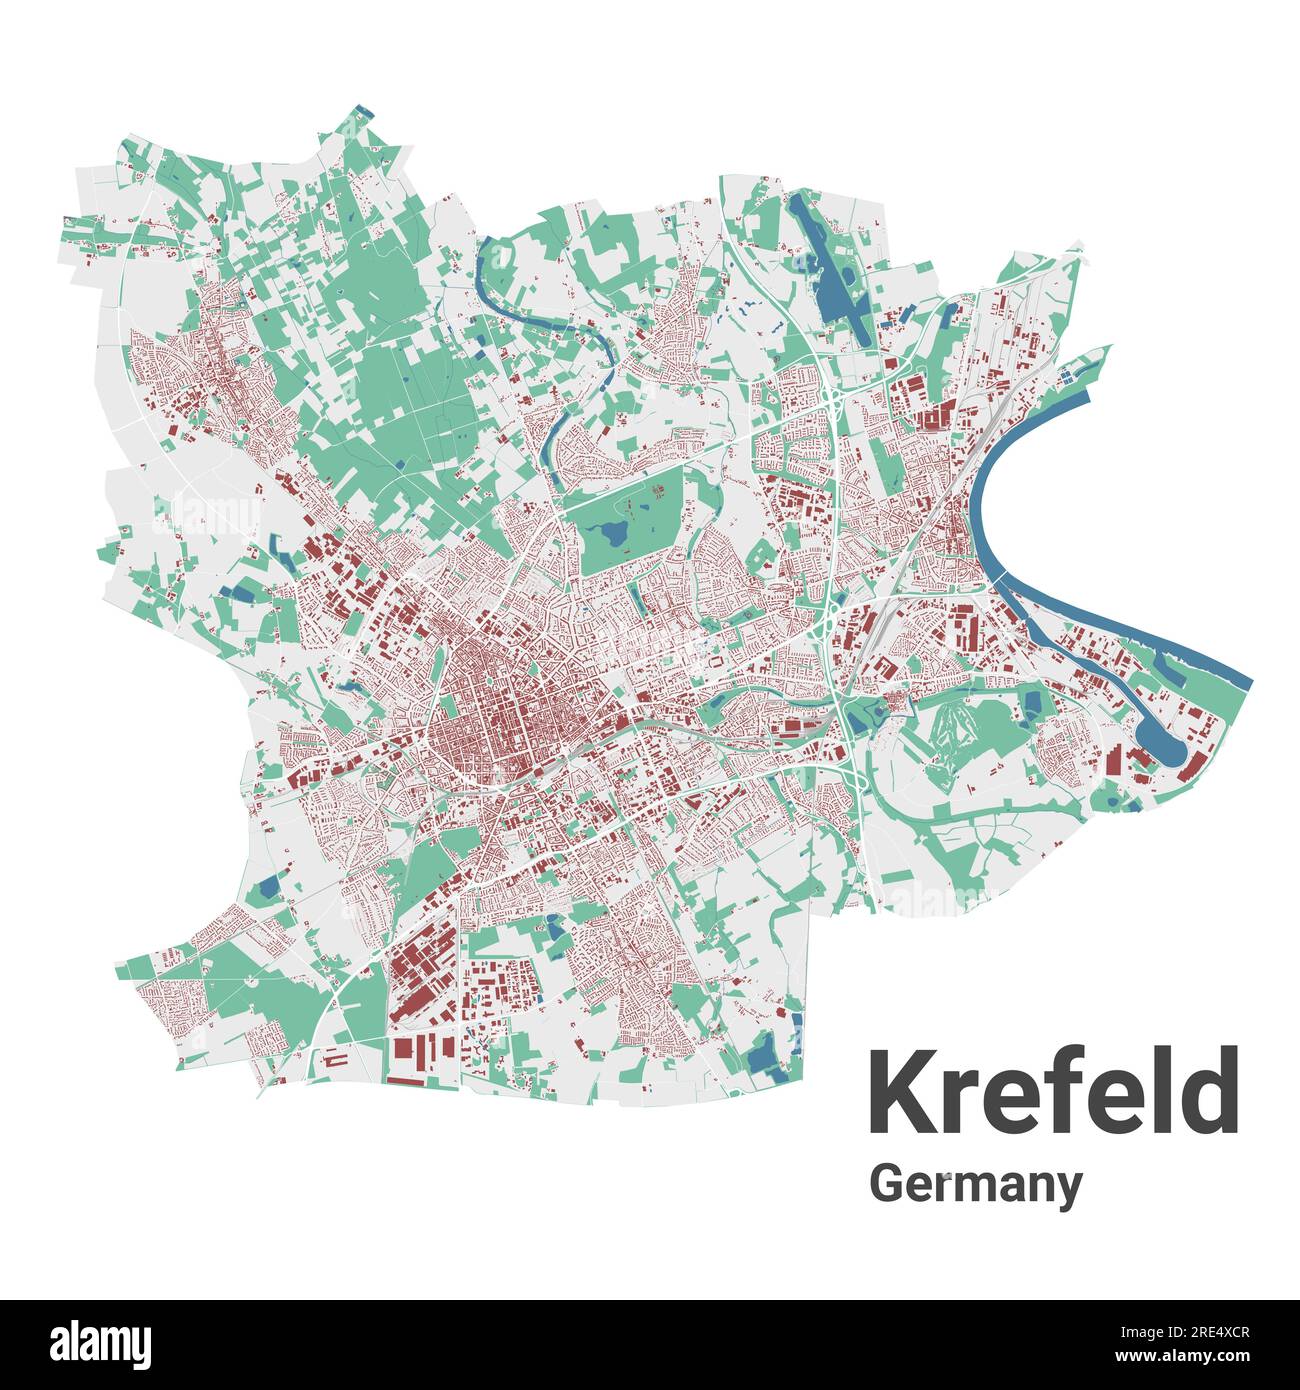 Stadtplan Krefeld innerhalb der Verwaltungsgrenzen. Detaillierte Stadtkarte mit Gebäuden. Stock Vektor